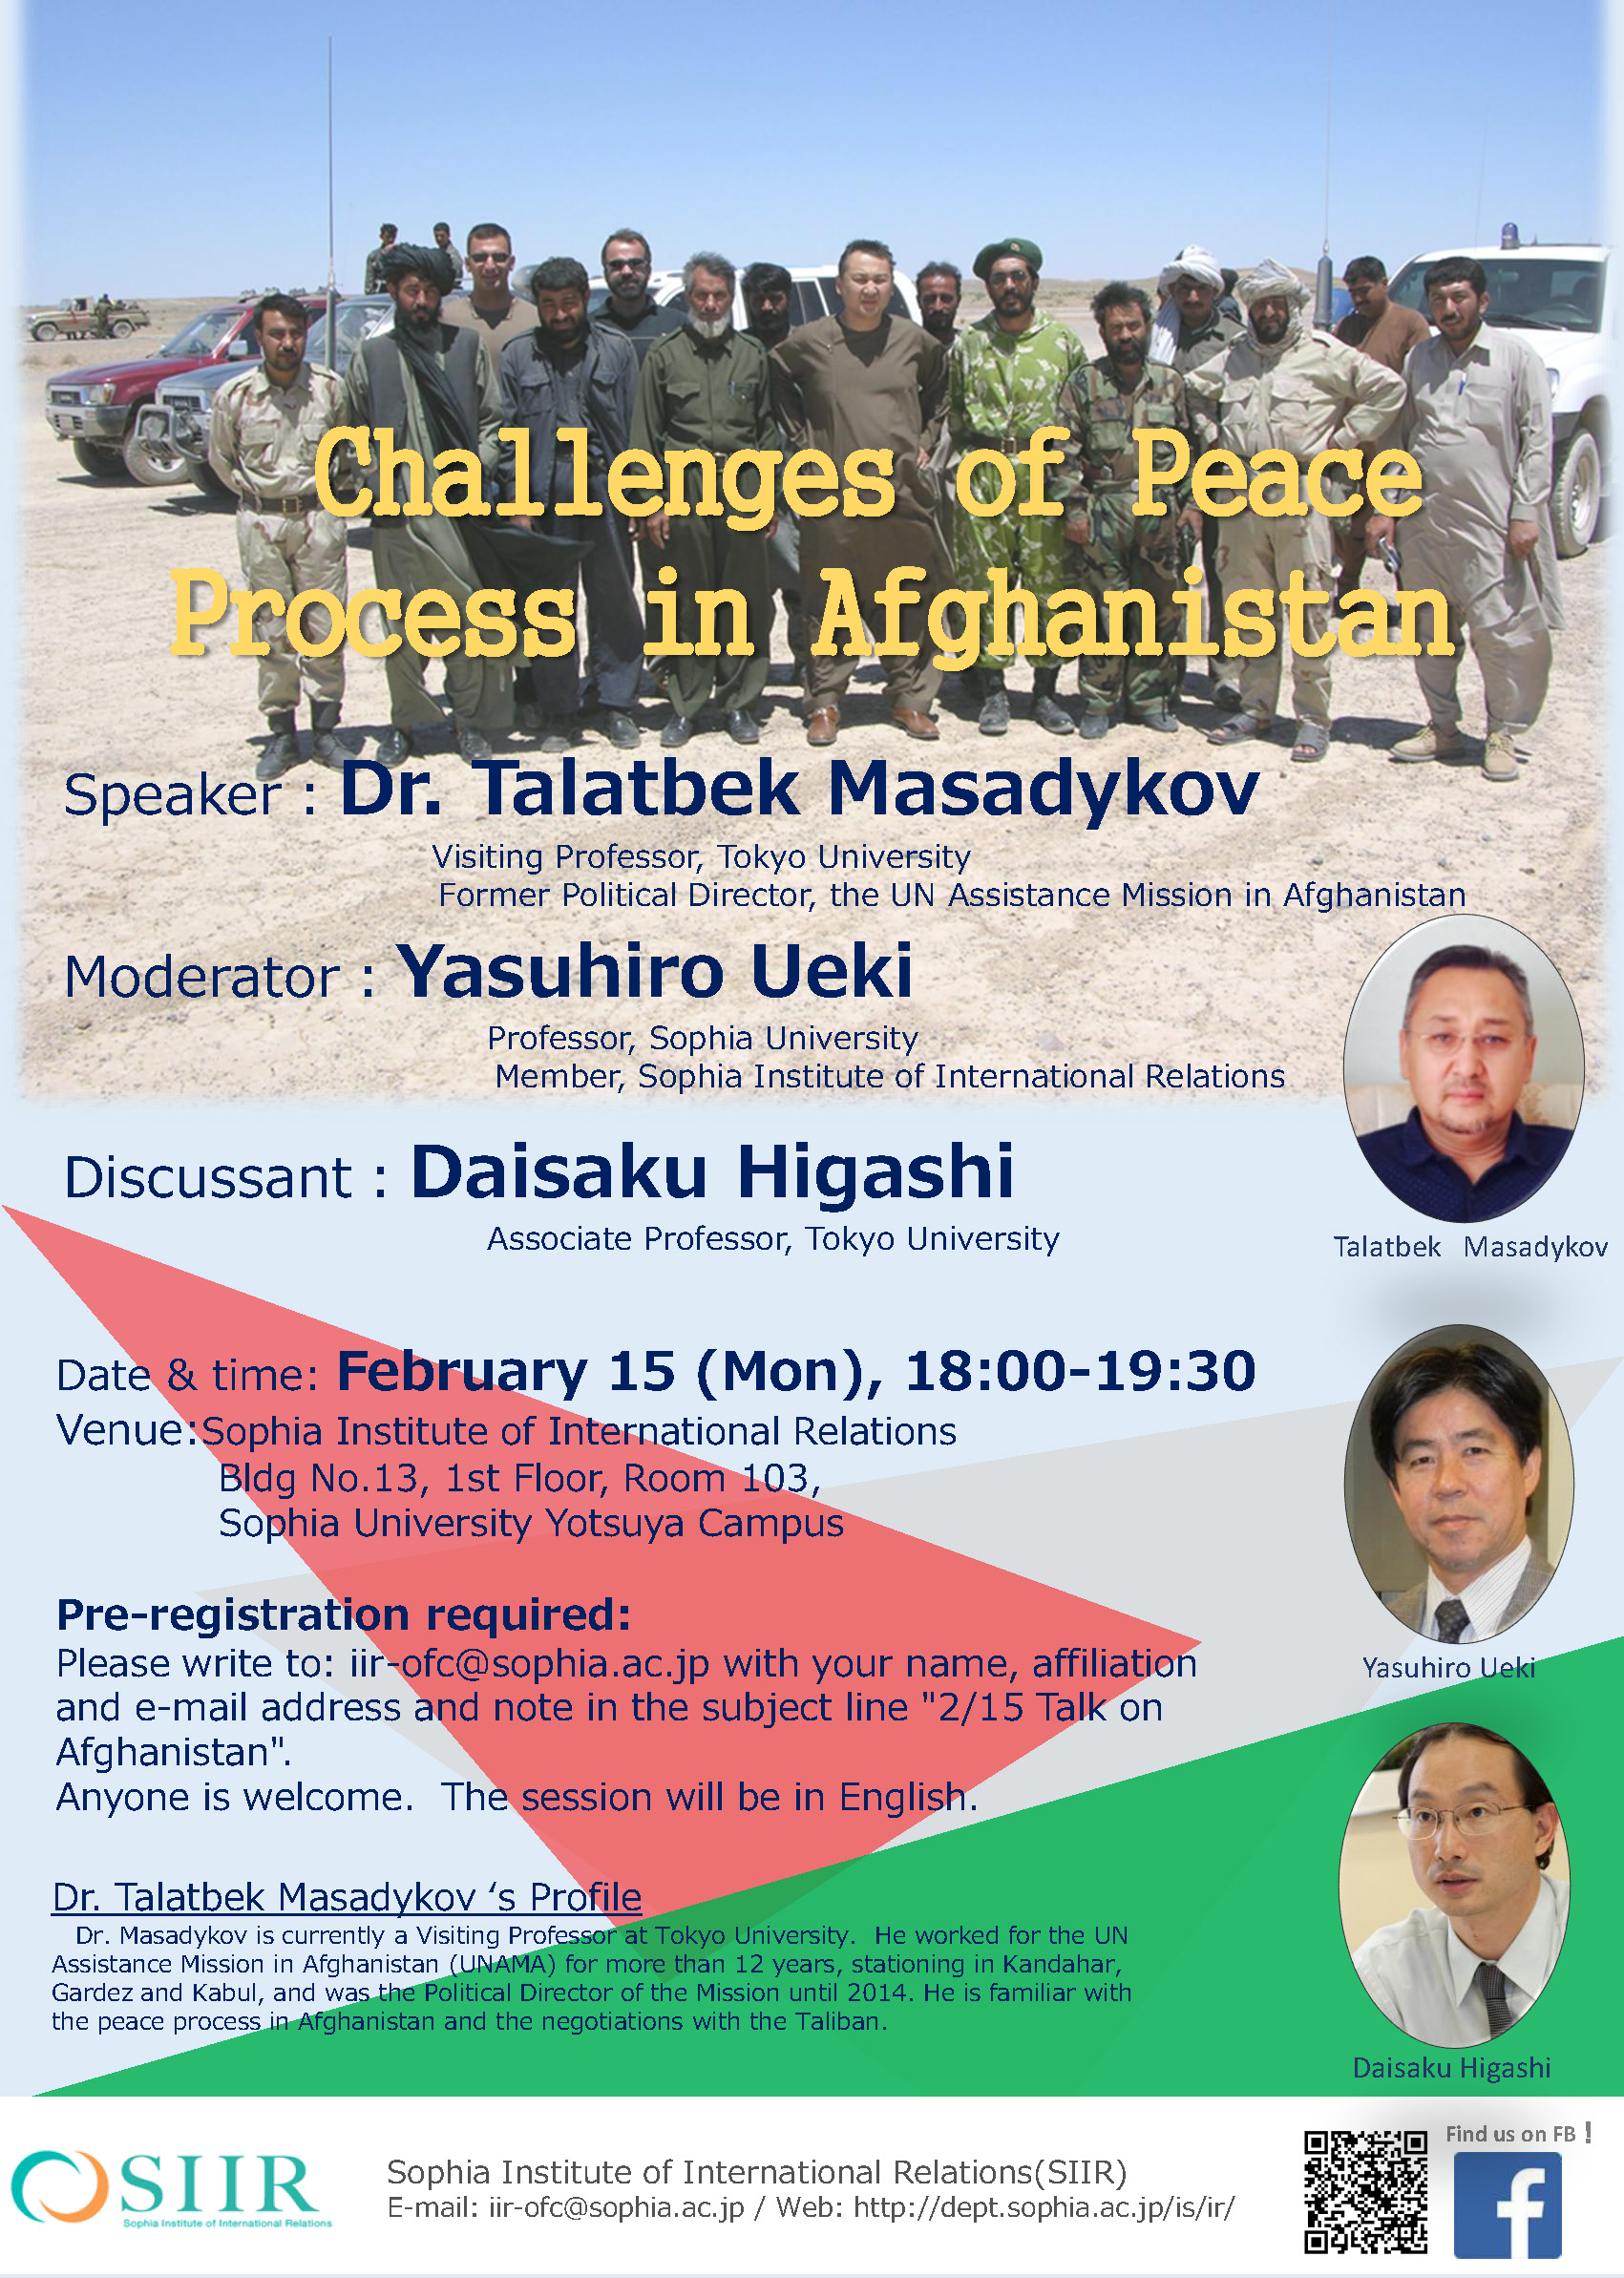 講演会｢Challenges of Peace Process in Afghanistan｣を開催します